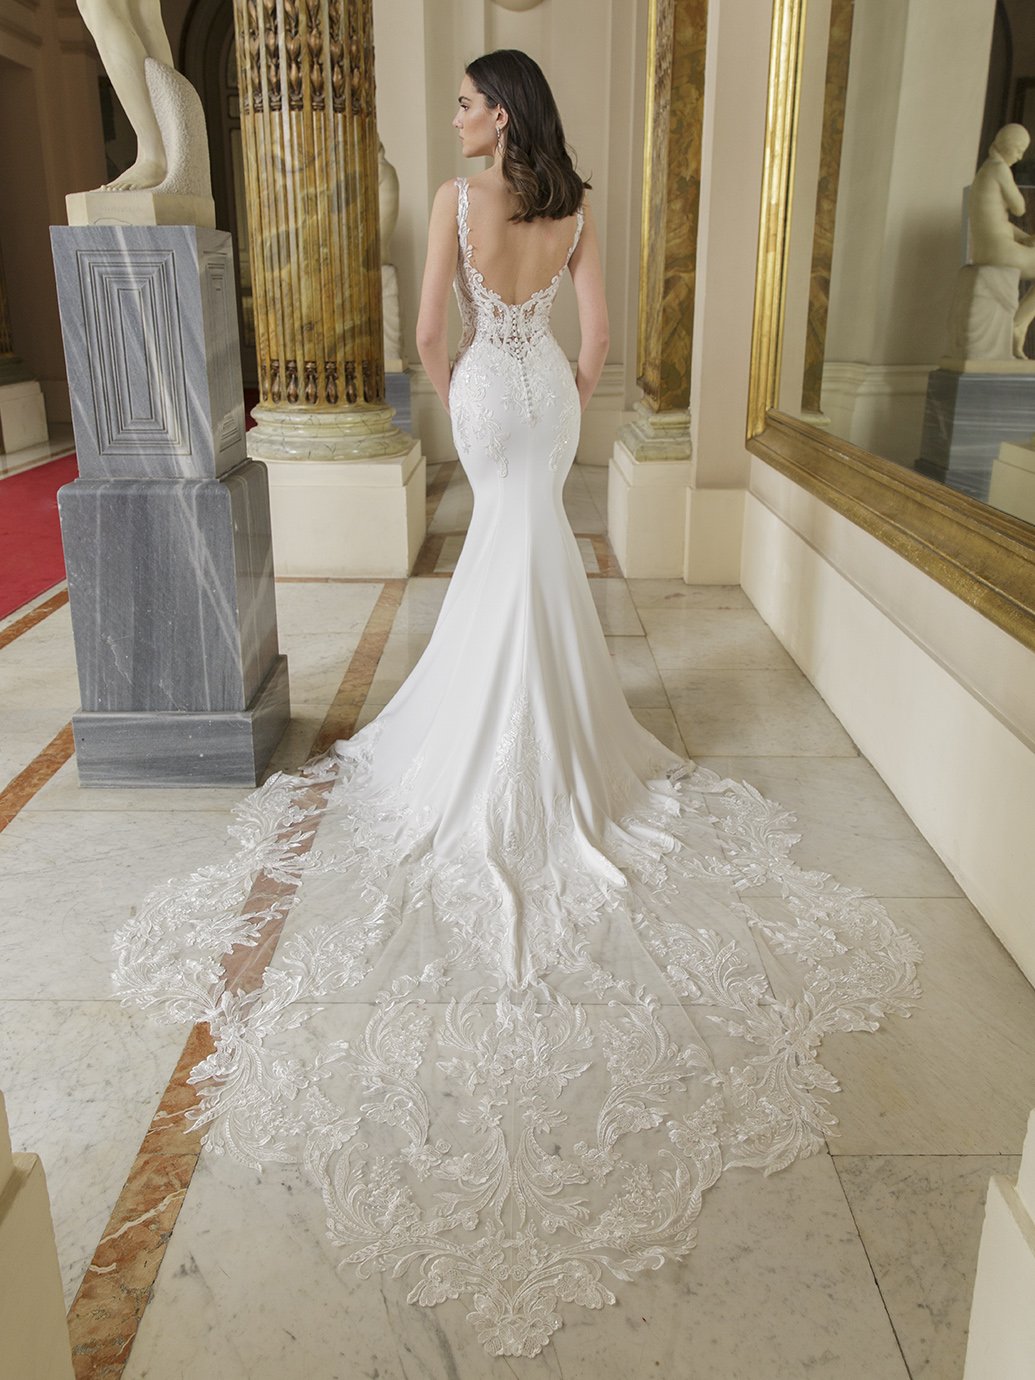 blanc-de-blanc-bridal-boutique-pittsburgh-cleveland-dress-wedding-gown-elysee-azzurra.jpg